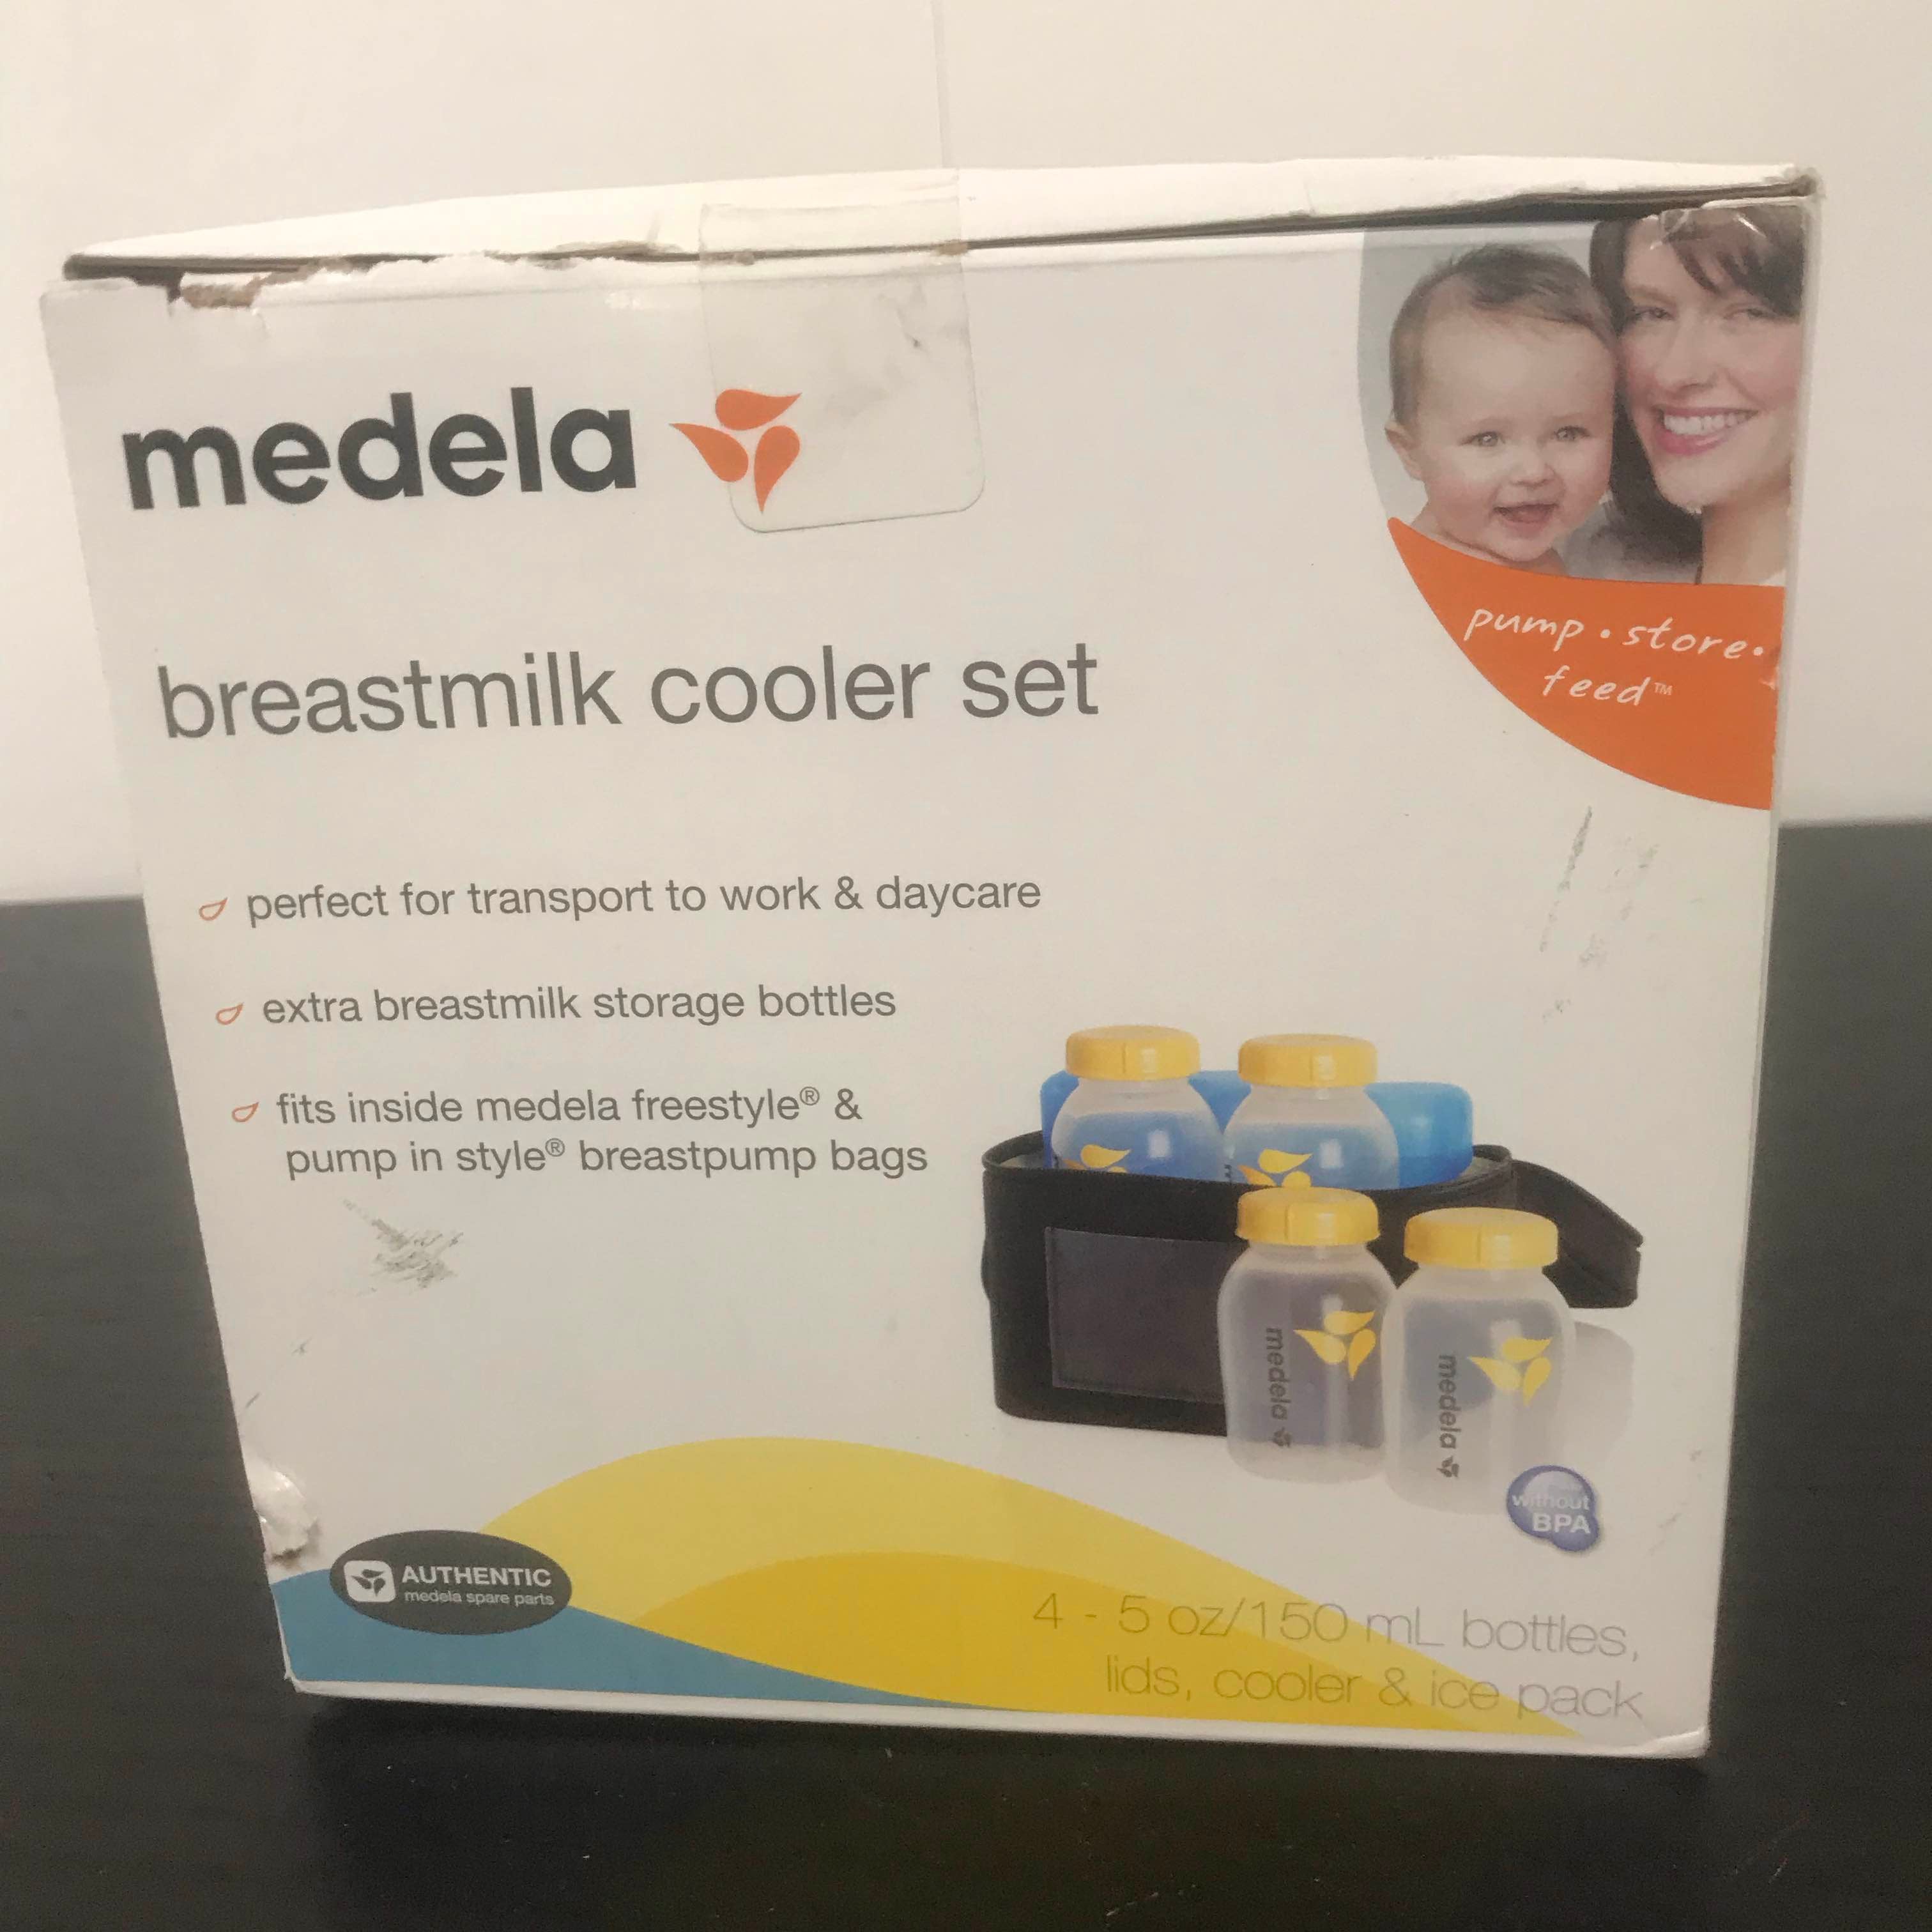 Medela Cooler Bag with 150 ml BPA-free bottles - Set of 4 storage